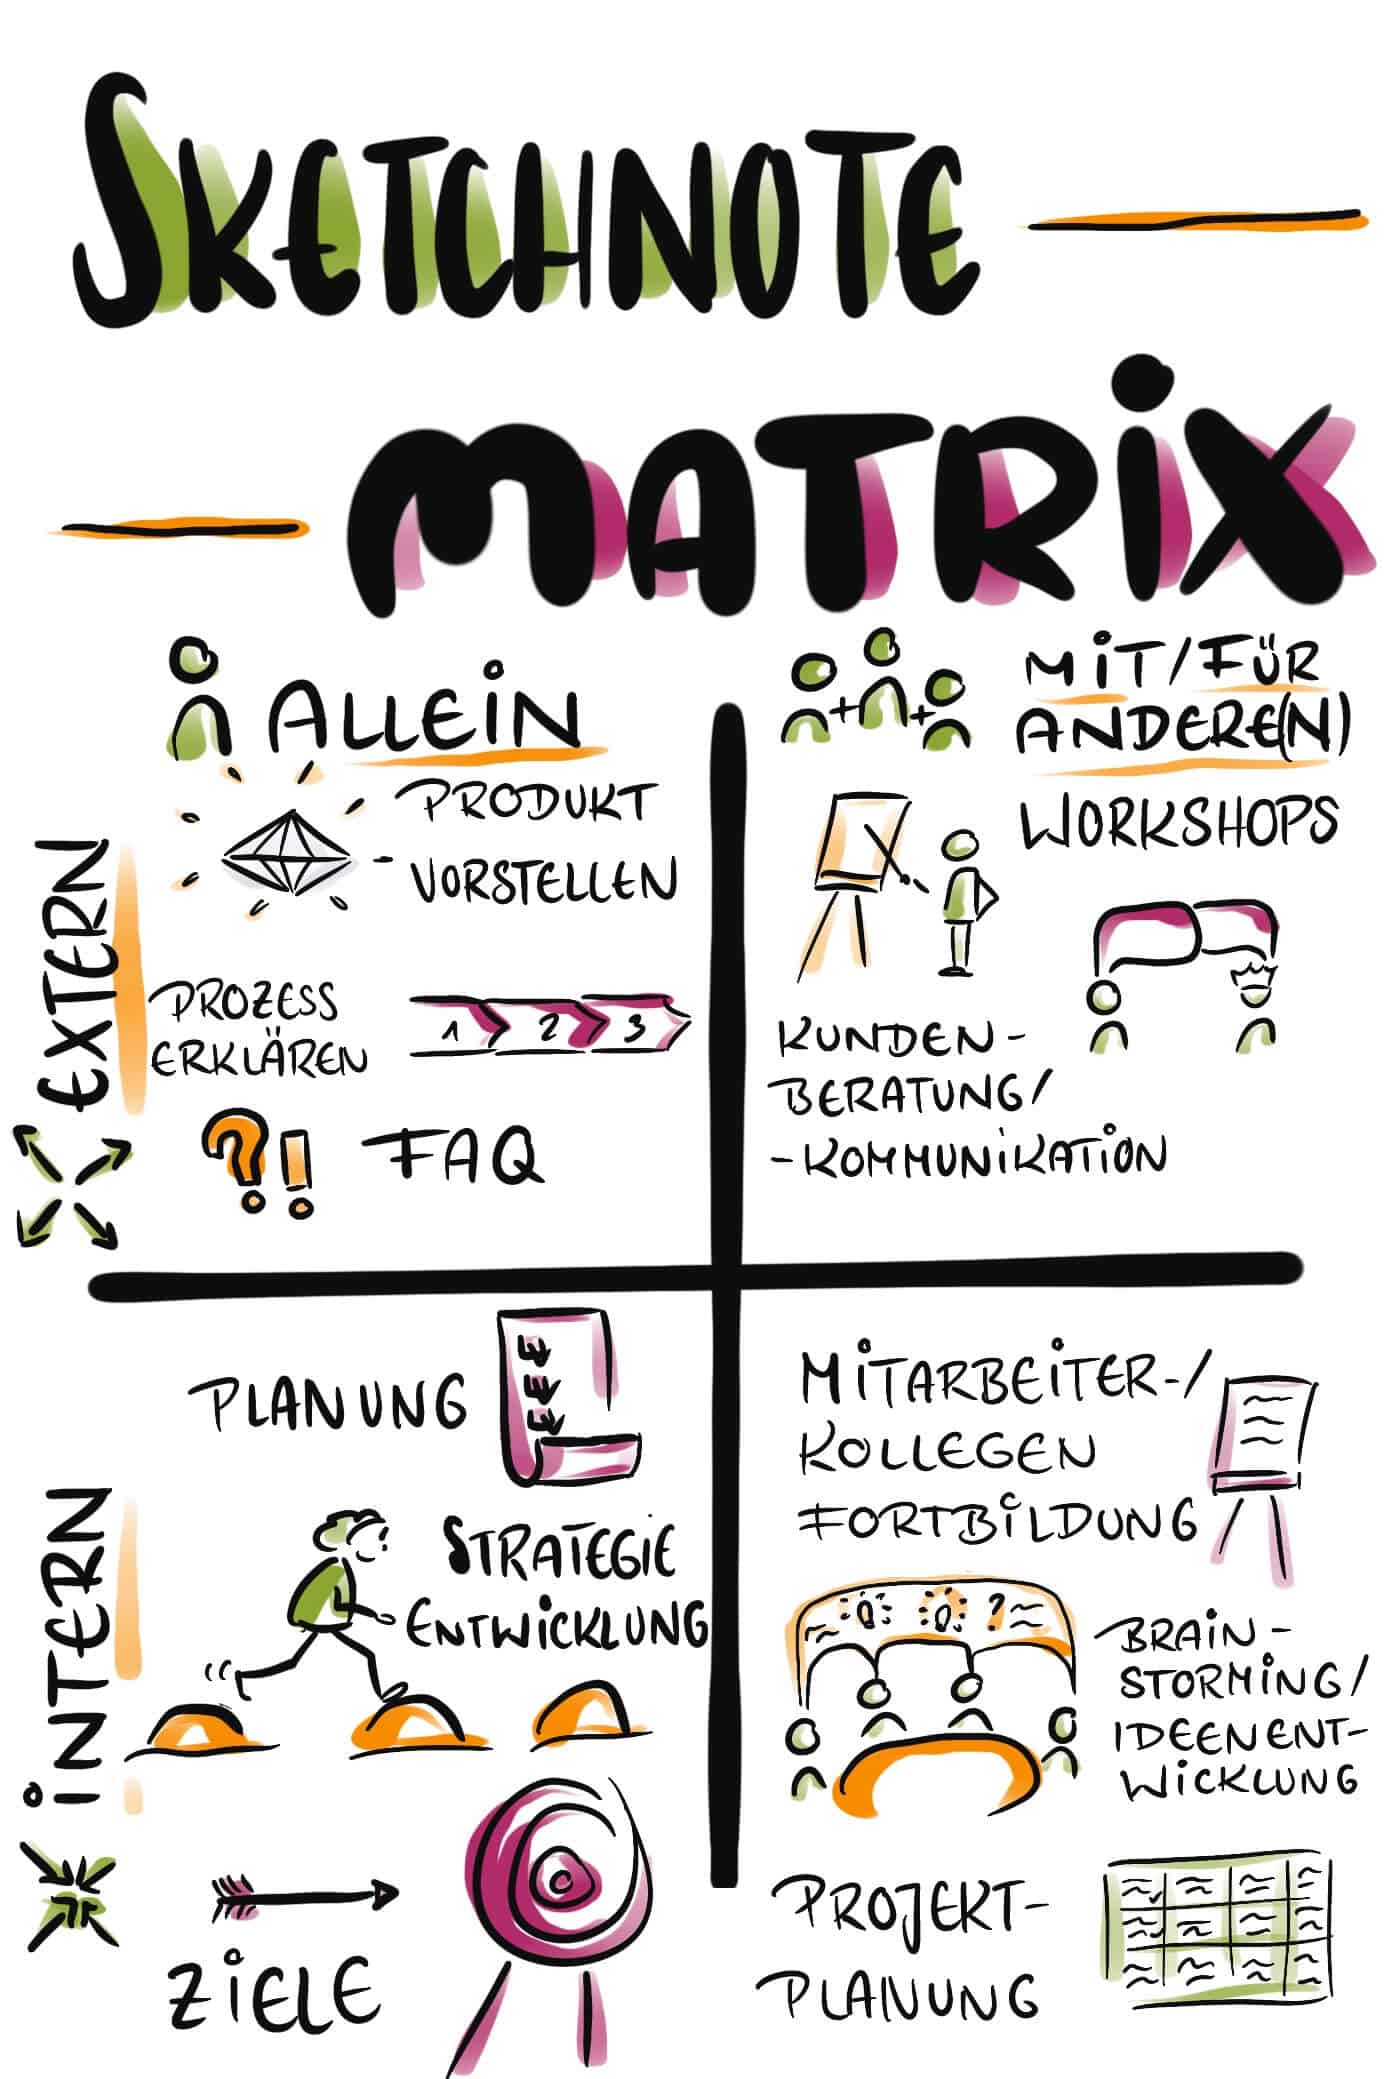 Die Sketchnote Matrix